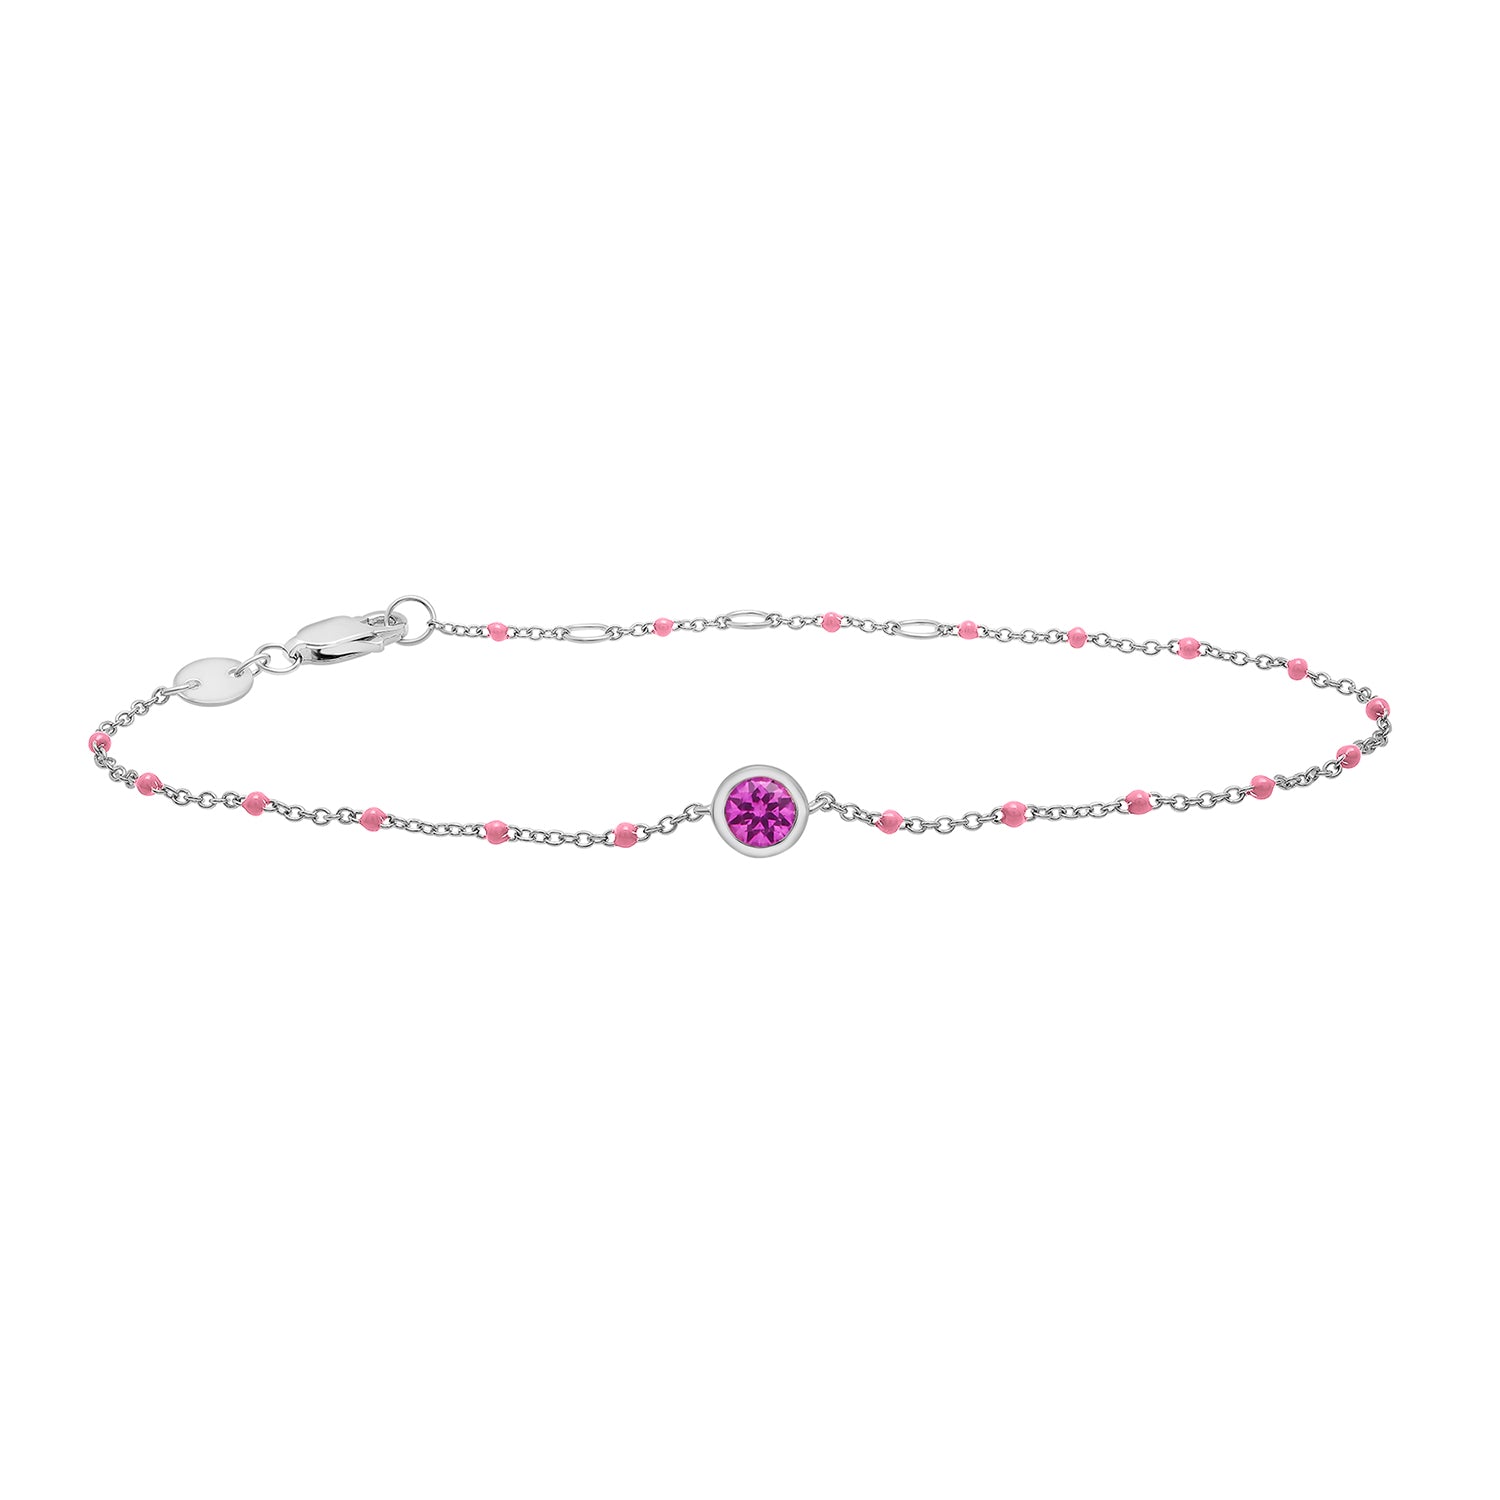 Birthstone Enamel Bracelet in light Pink Color